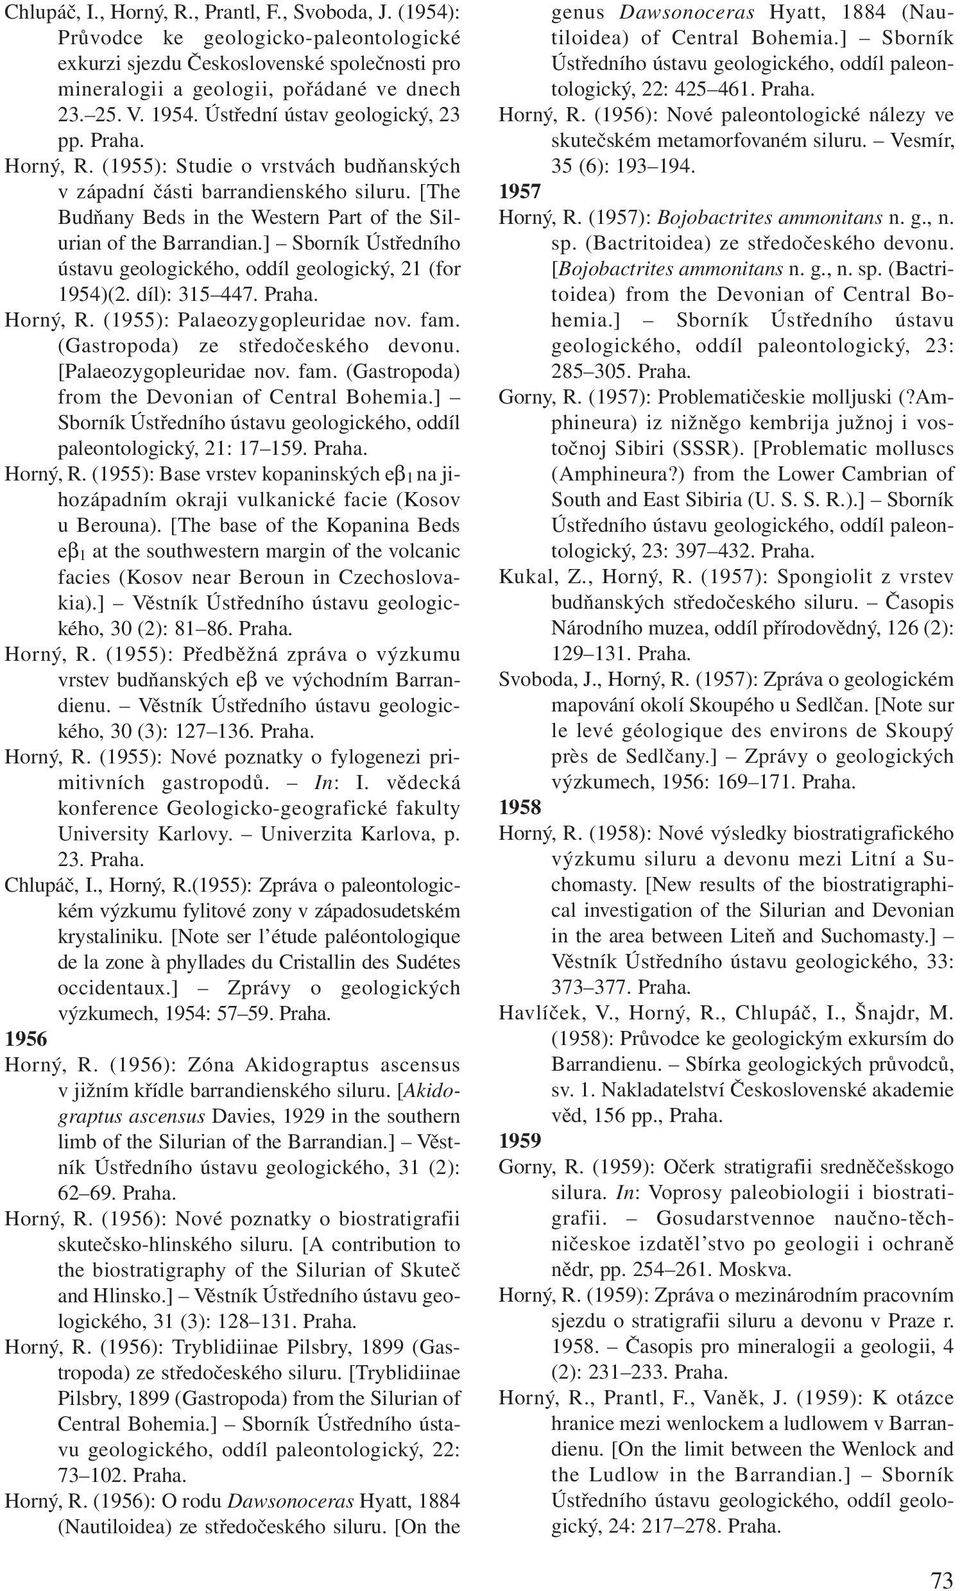 ] Sborník Ústředního ústavu geologického, oddíl geologický, 21 (for 1954)(2. díl): 315 447. Horný, R. (1955): Palaeozygopleuridae nov. fam. (Gastropoda) ze středočeského devonu.